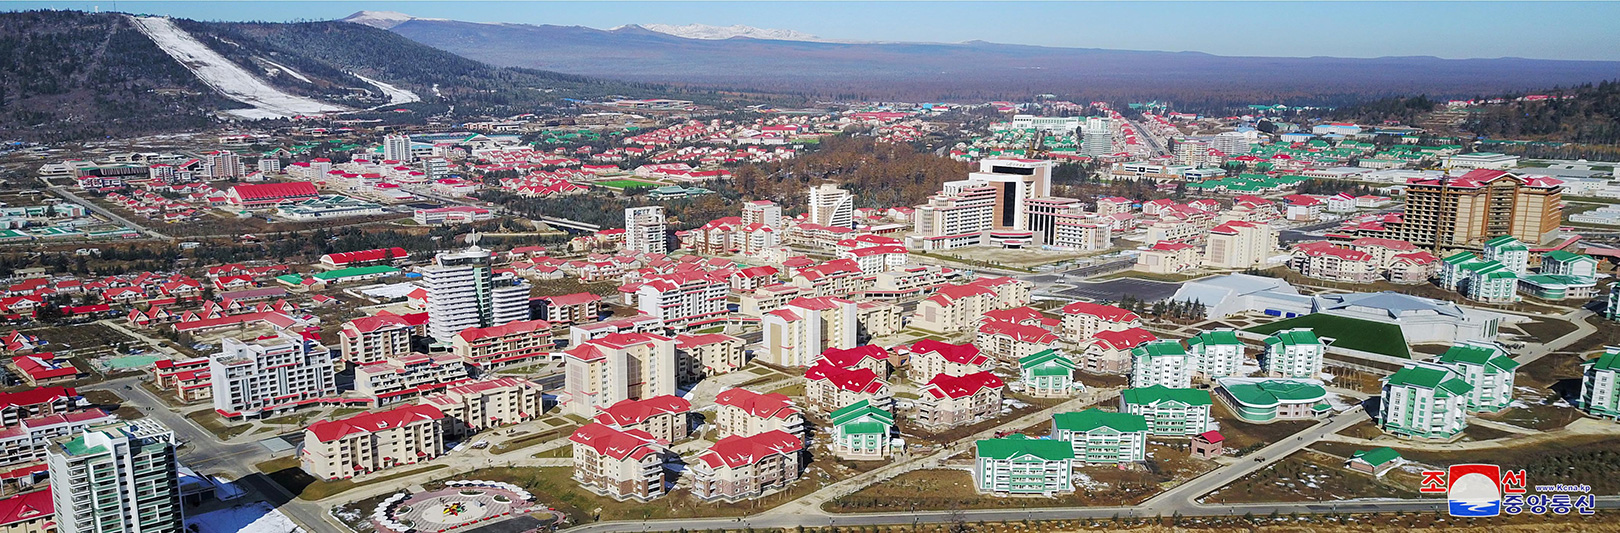 Logros del Socialismo en Corea del Norte Kim-jong-un-recorre-la-construccic3b3n-del-distrito-de-samjiyon